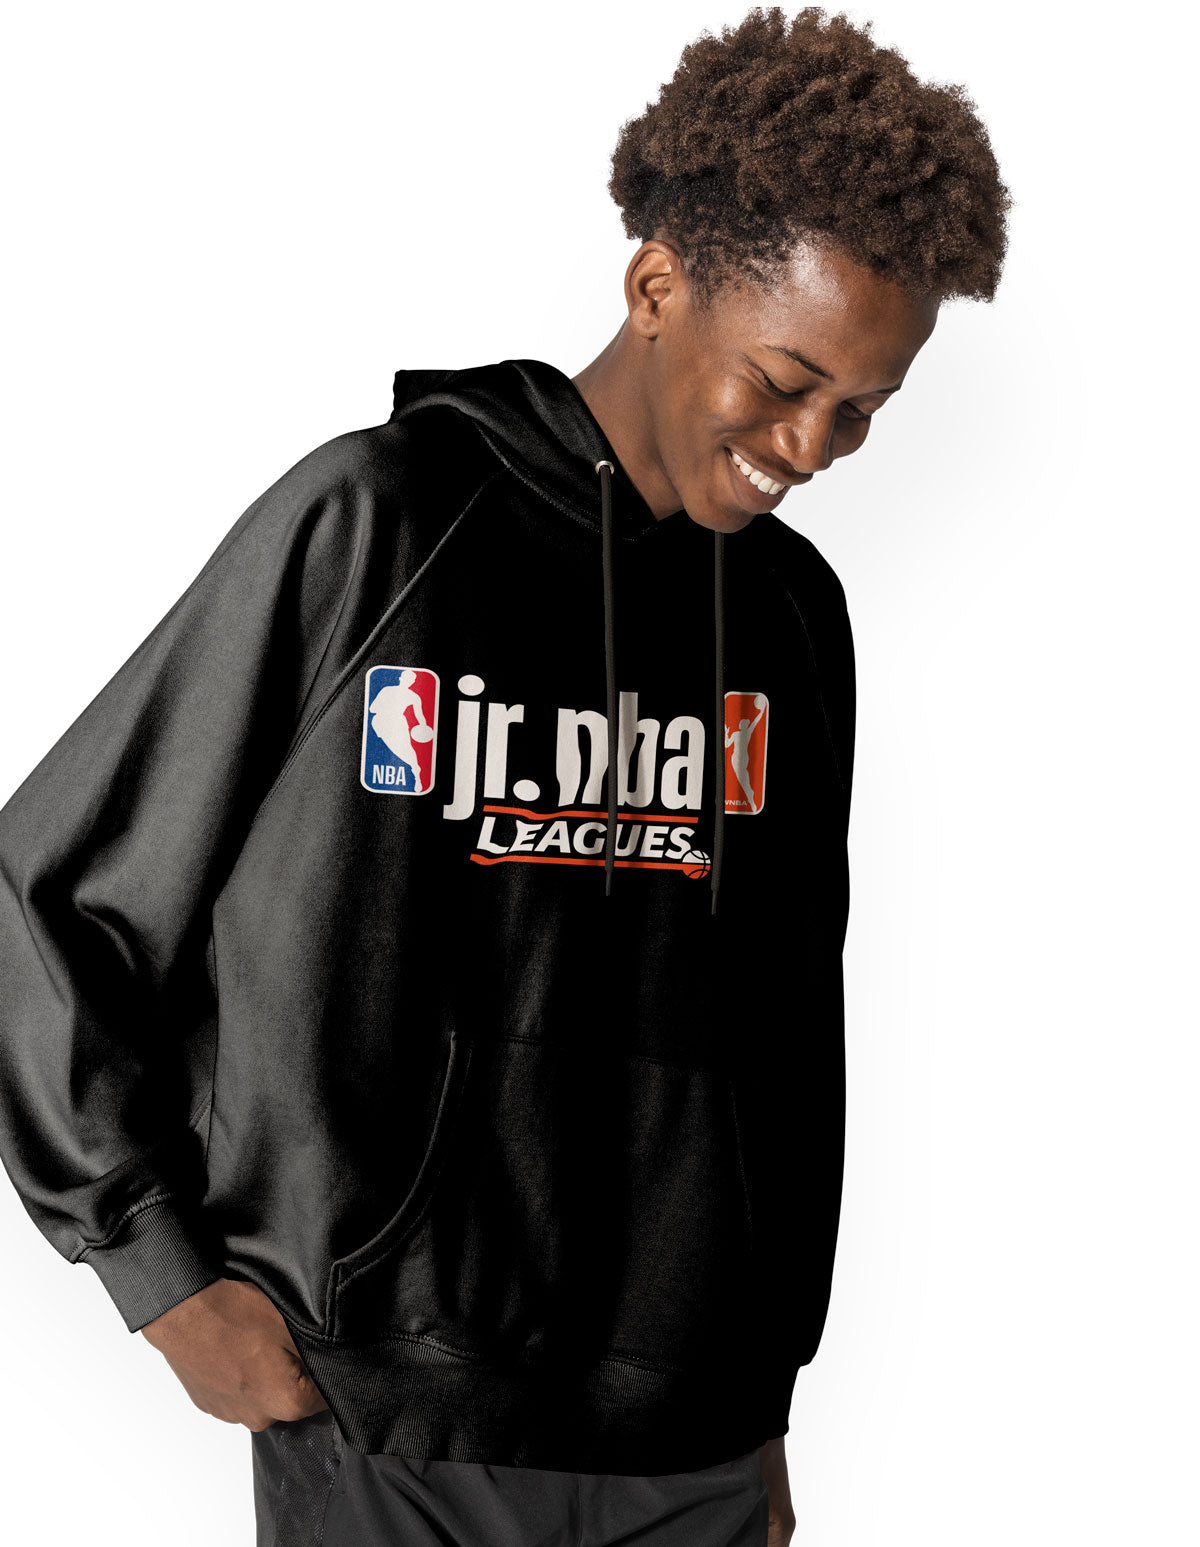 Jr. NBA Leagues Hoodie